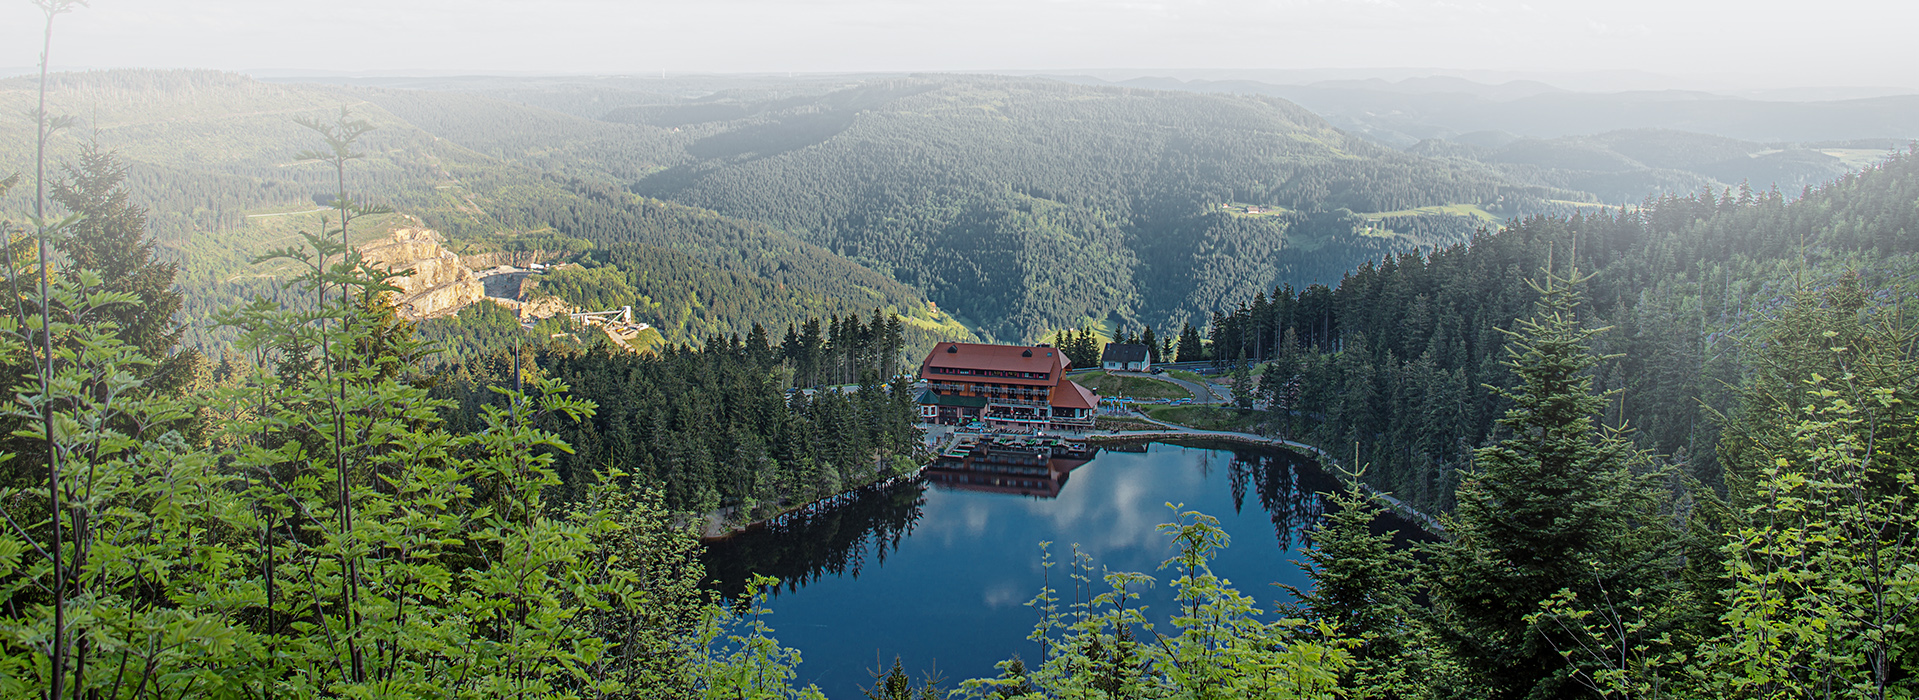 Blick auf das Berghotel Mummelsee. Zwischen dichtem Nadelwald liegt der runde Mummelsee. An seinem Ufer steht ein großes Haus. Im Hintergrund sind Berghänge zu sehen.